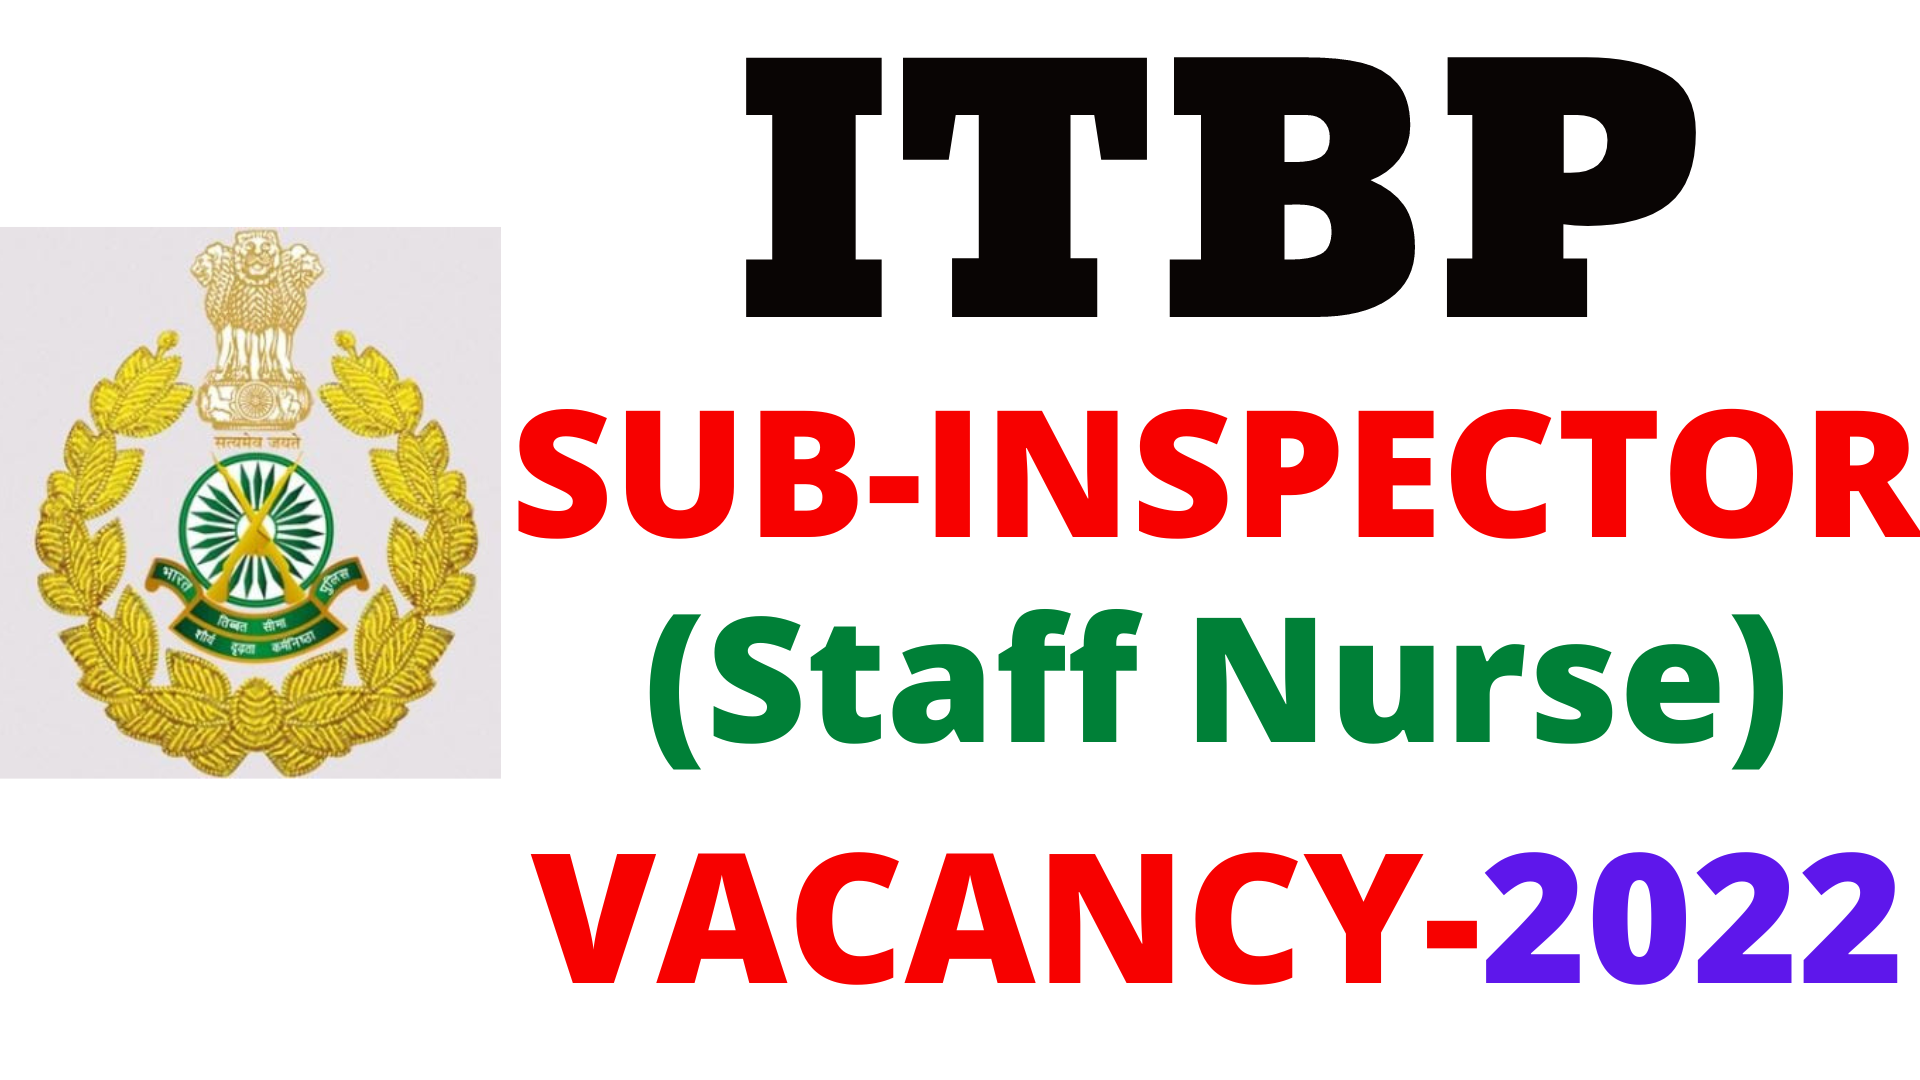 ITBP Sub Inspector Staff Nurse